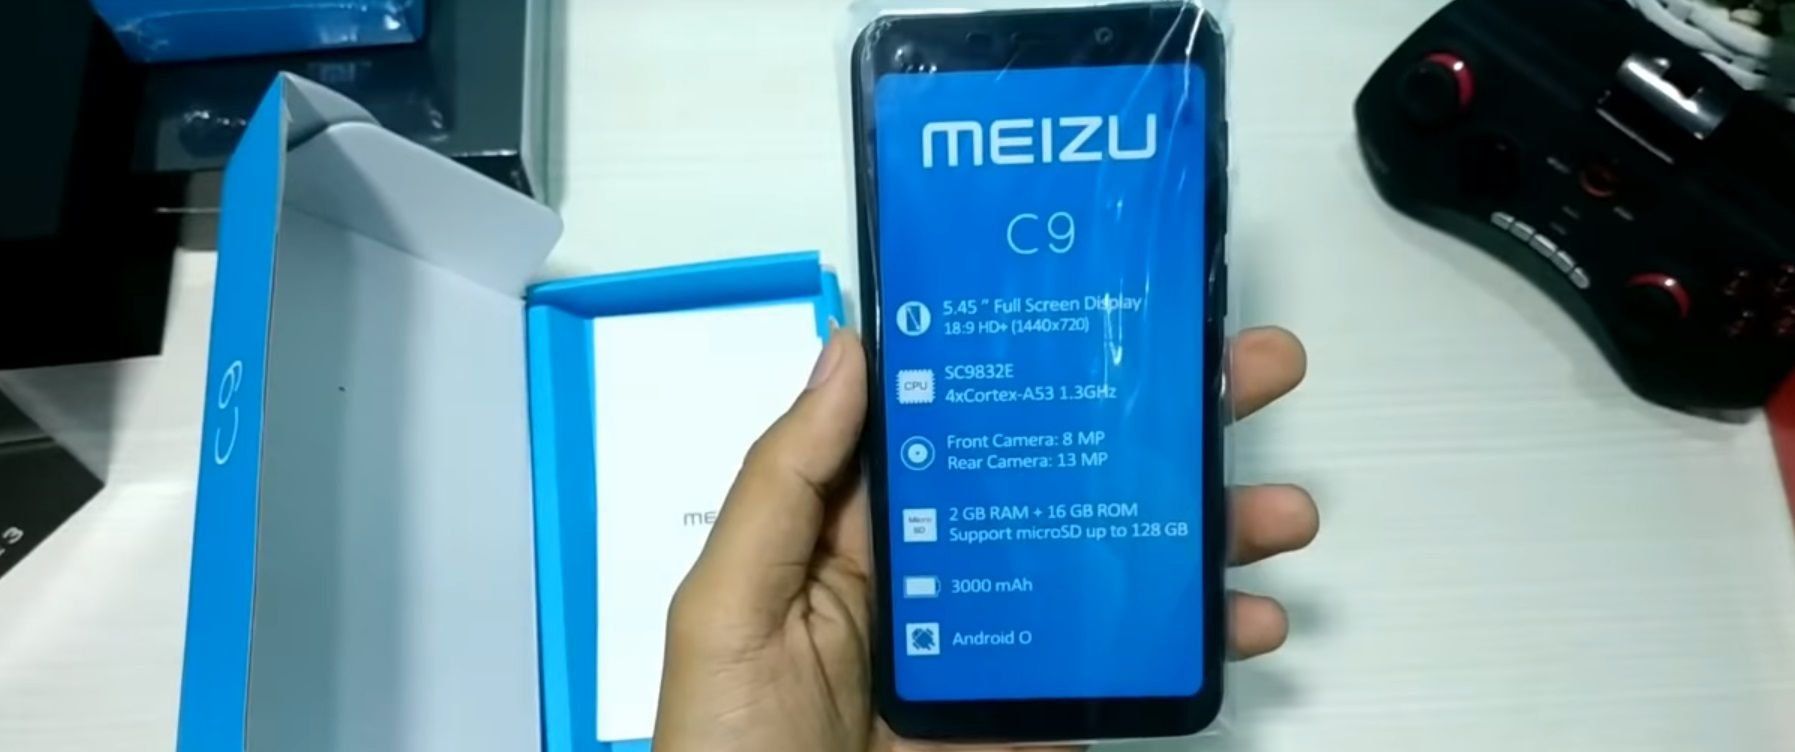 Smartphones Meizu C9 og C9 Pro - fordele og ulemper